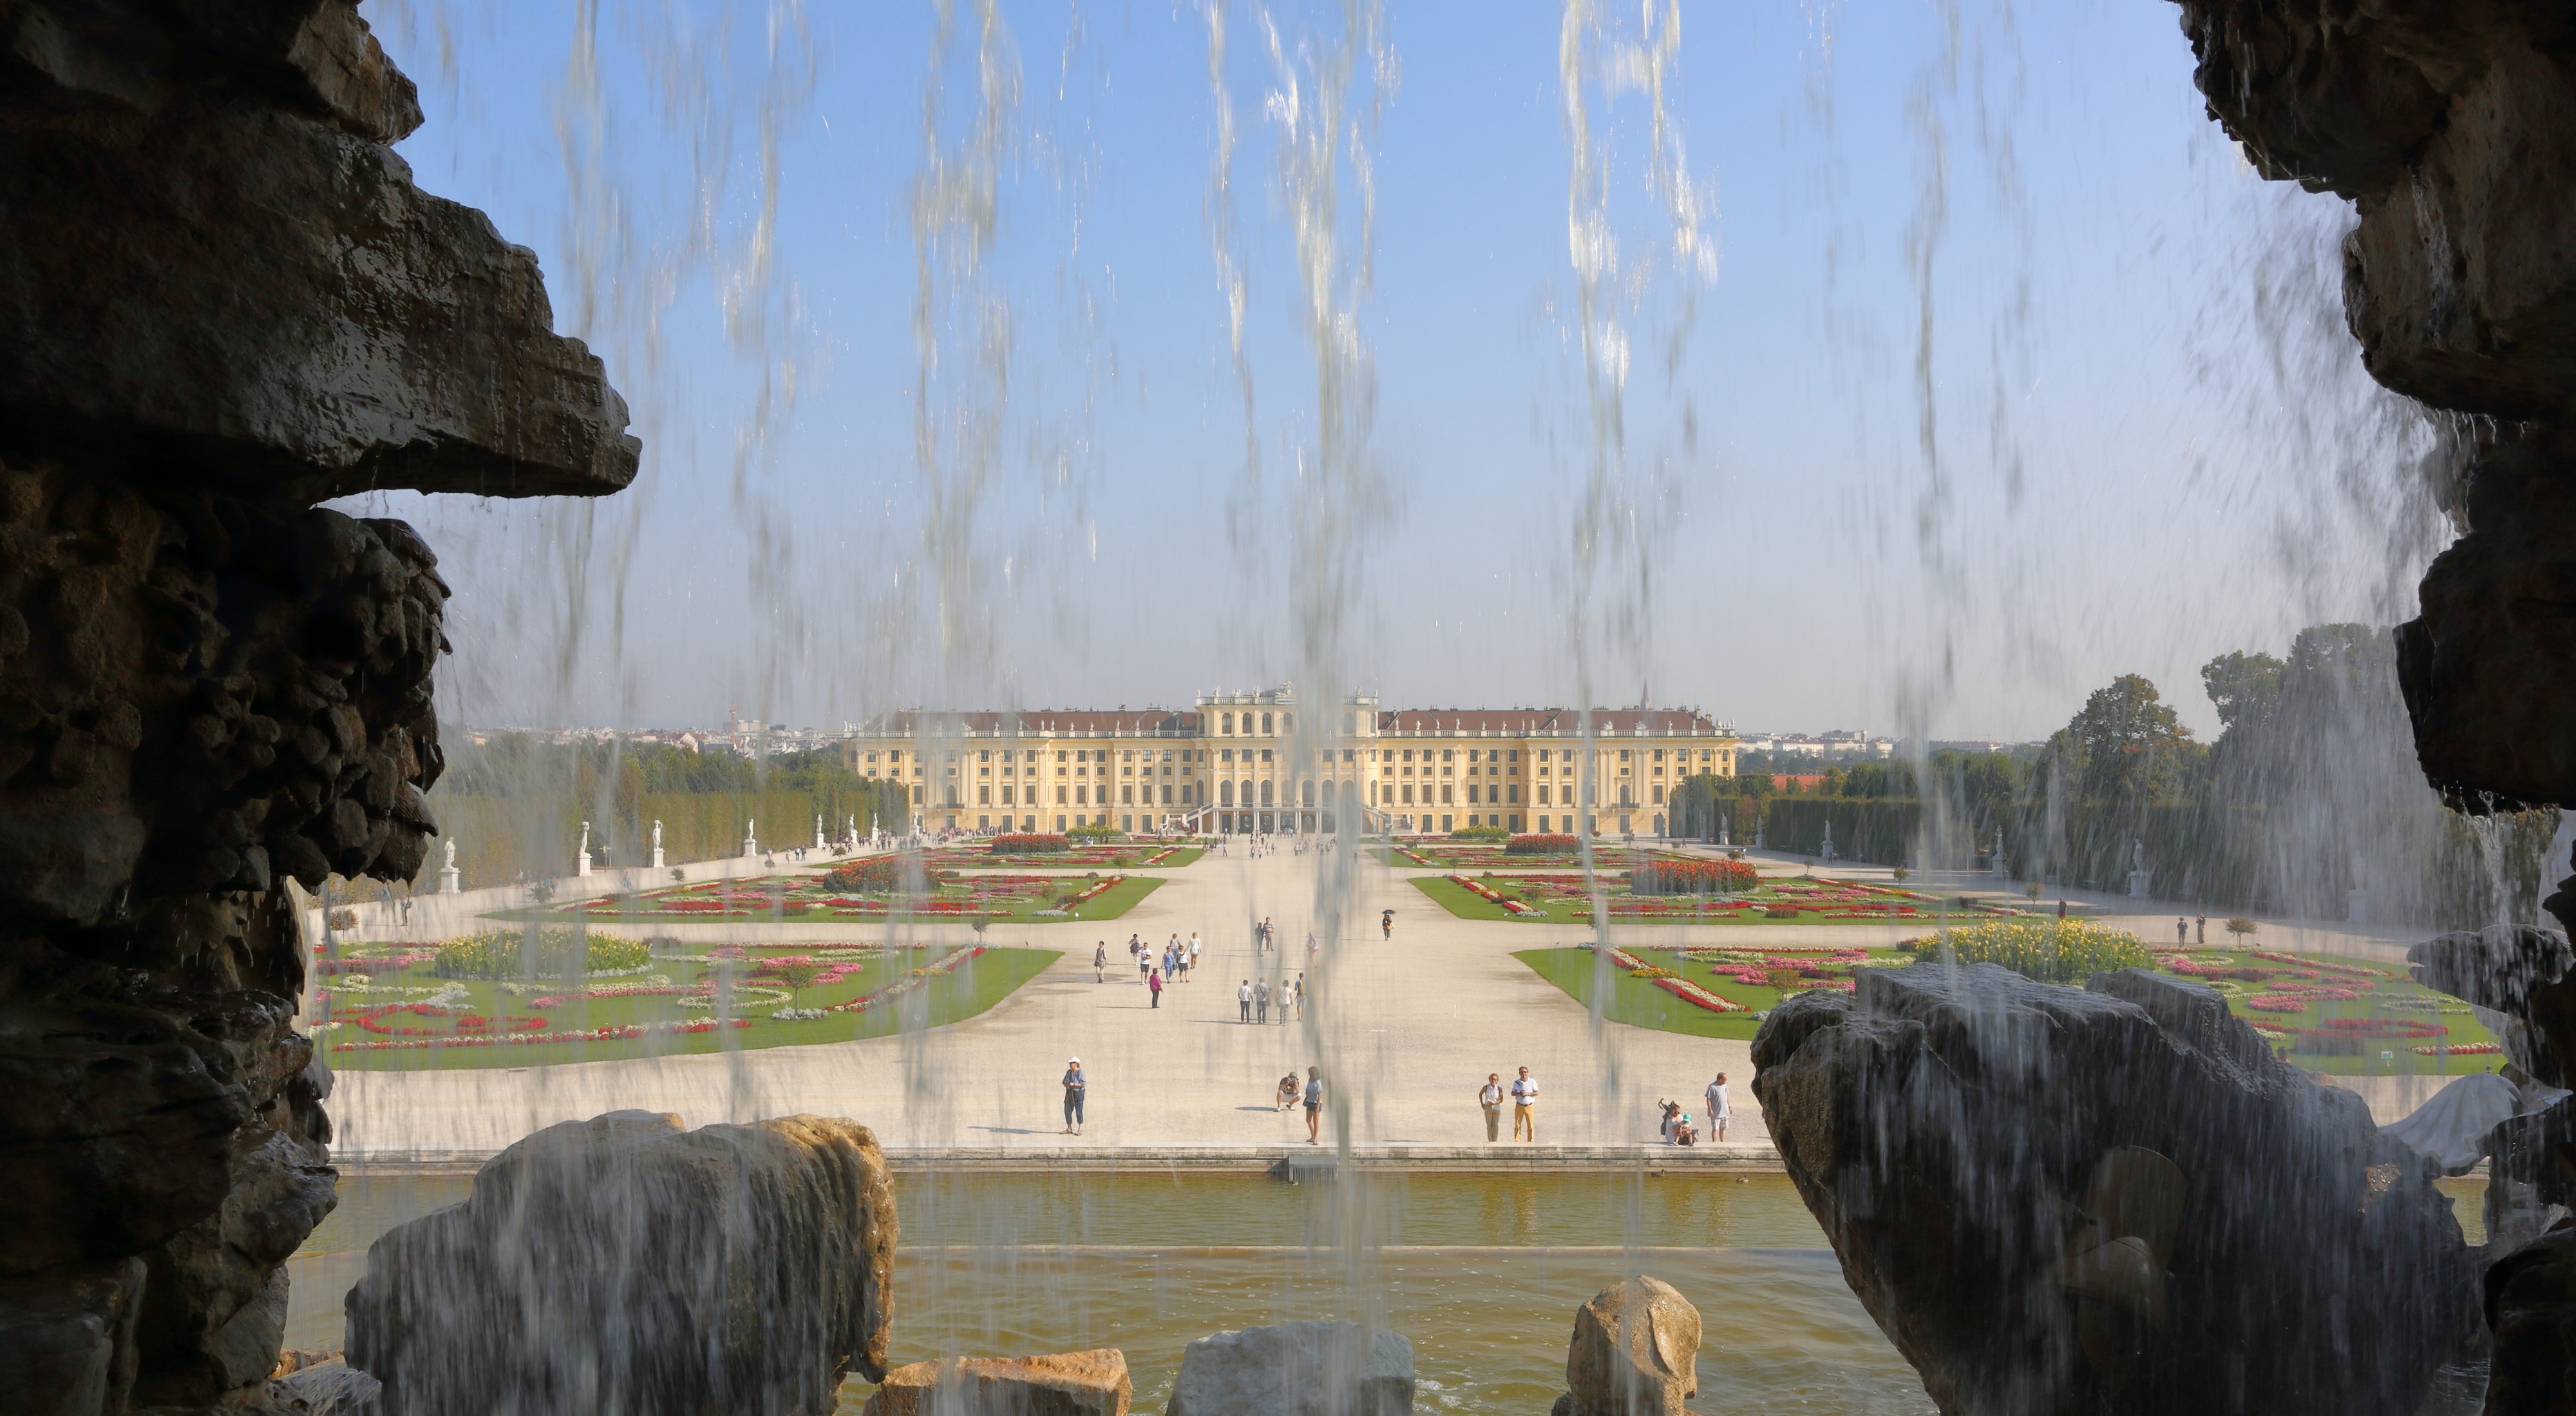 Schoenbrunn Palace as seen from Neptune Fountain, September 2016